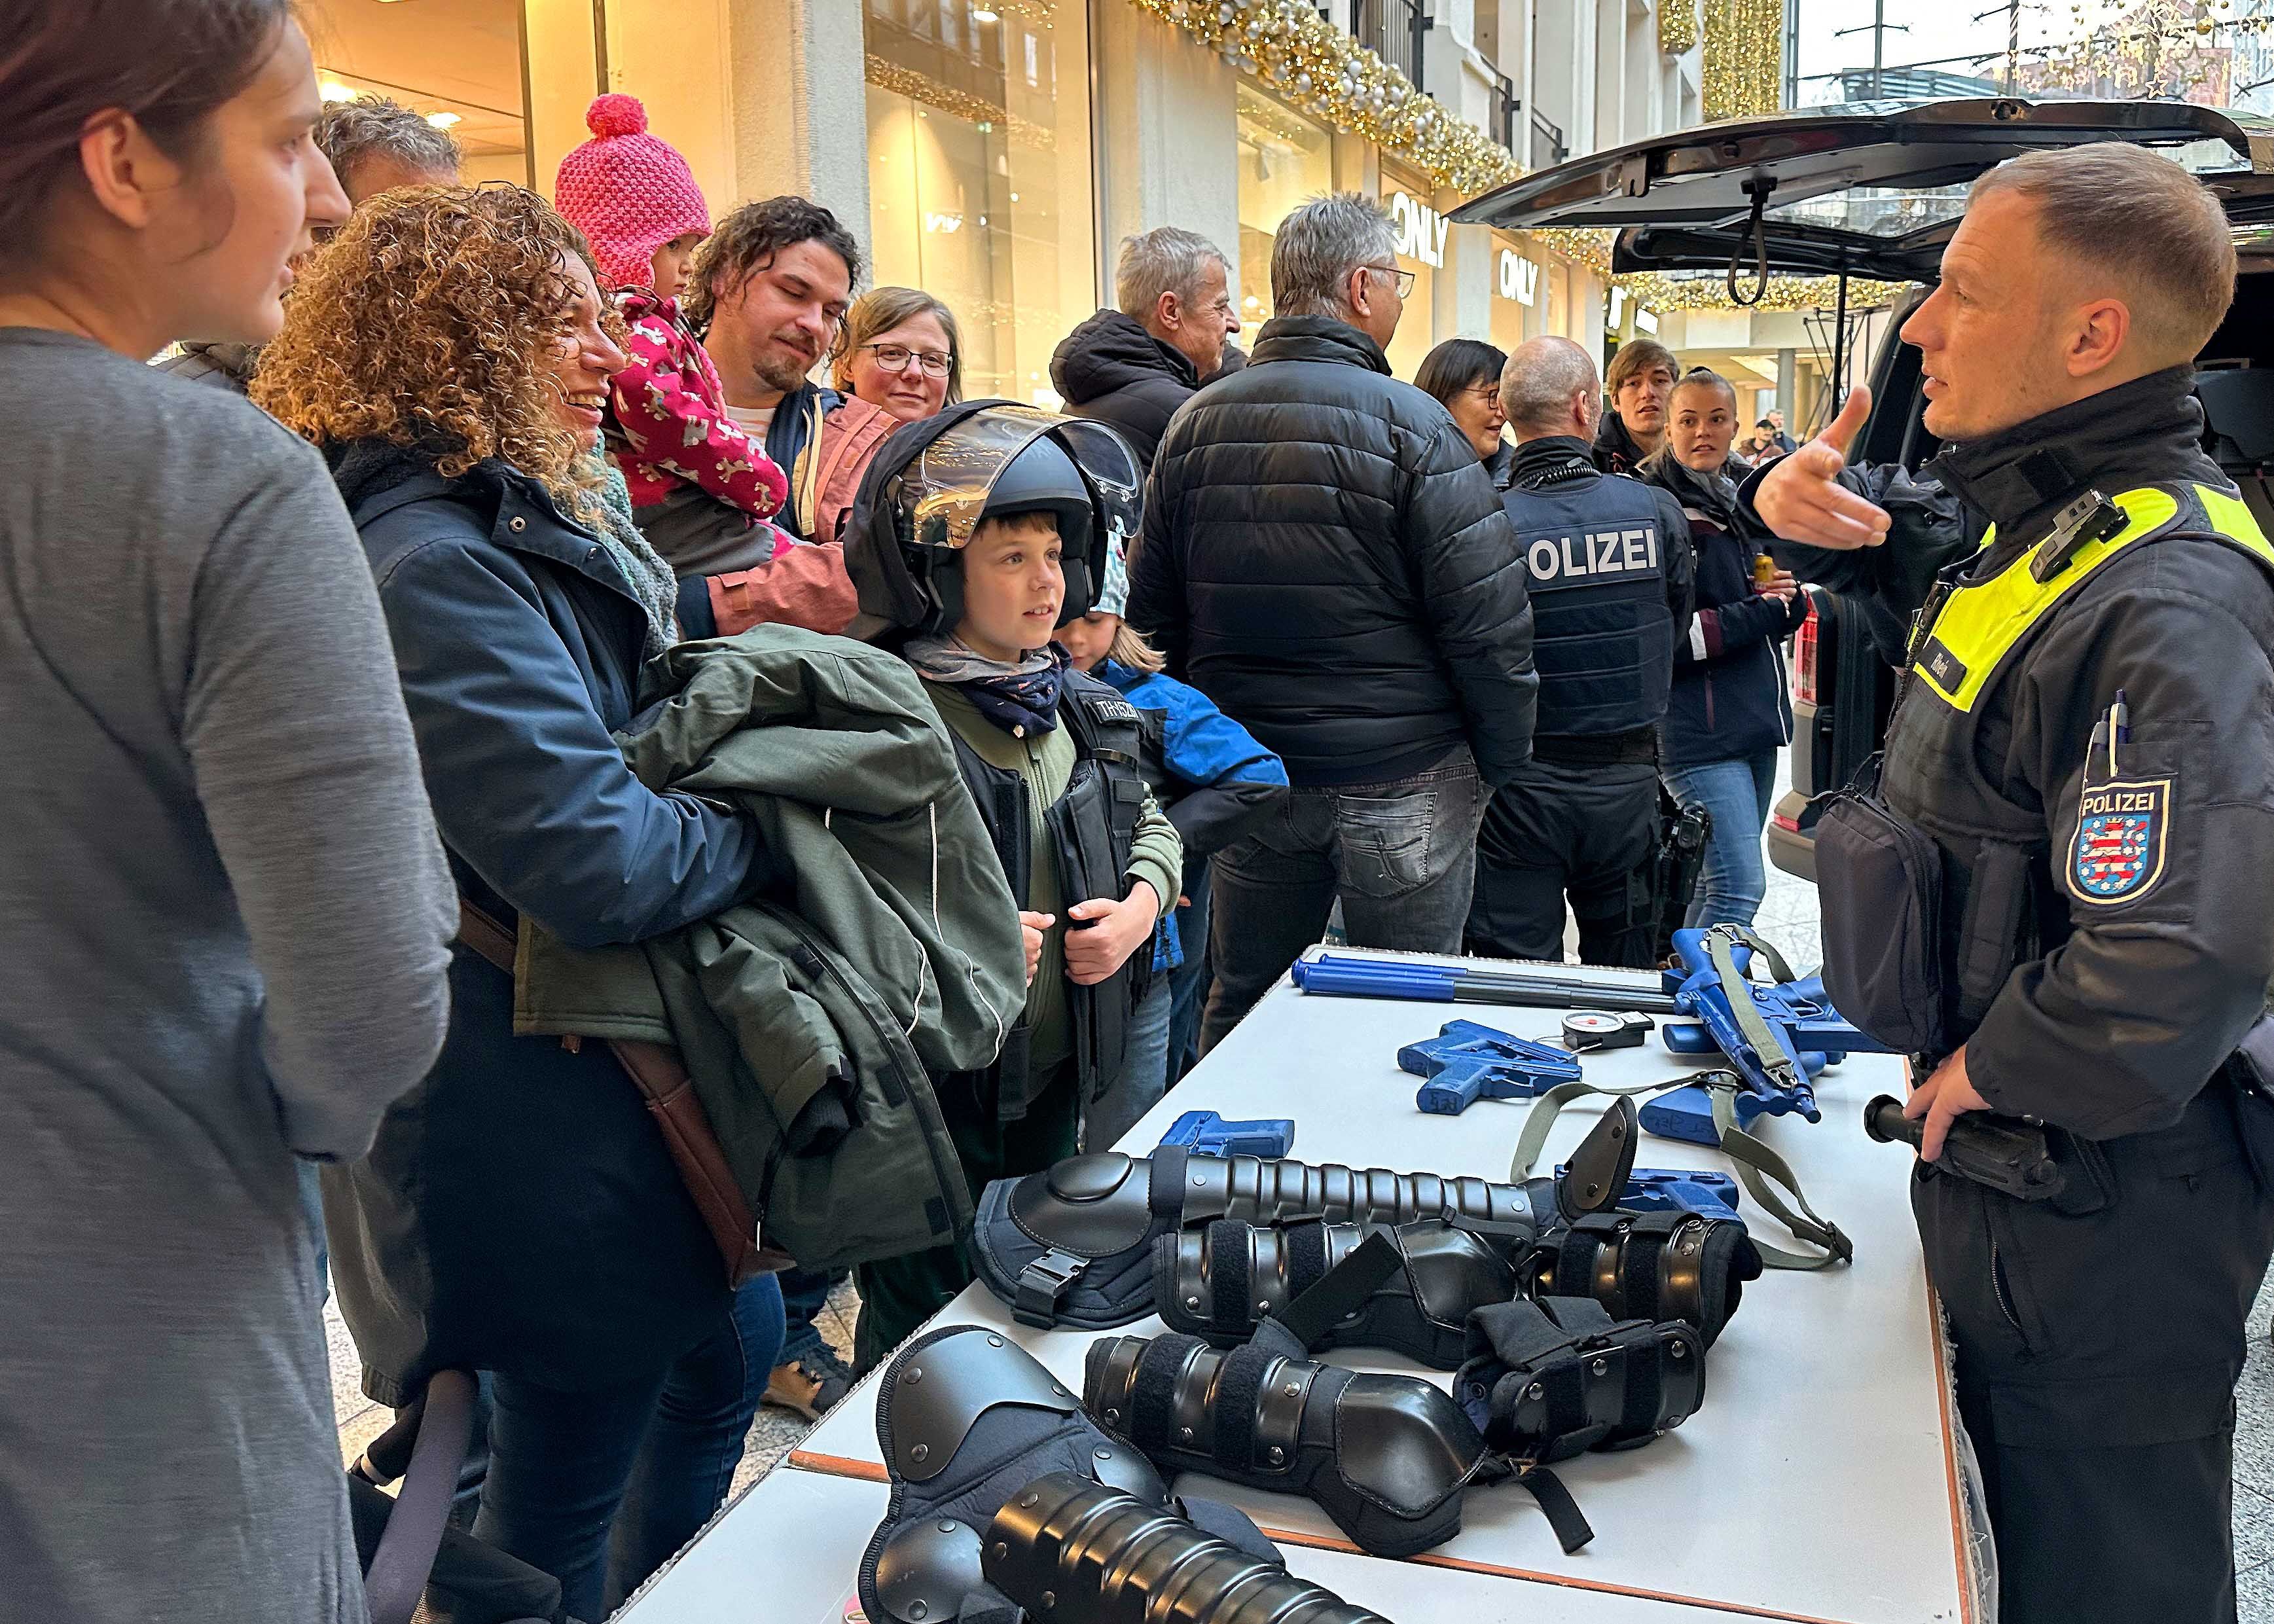 Die Jenaer Polizei war mit einem Großaufgebot ins größte Einkaufszentrum der Stadt angerückt. Sie wollten im Rahmen des Familientages des Centers einen Einblick in ihre tägliche Arbeit geben.